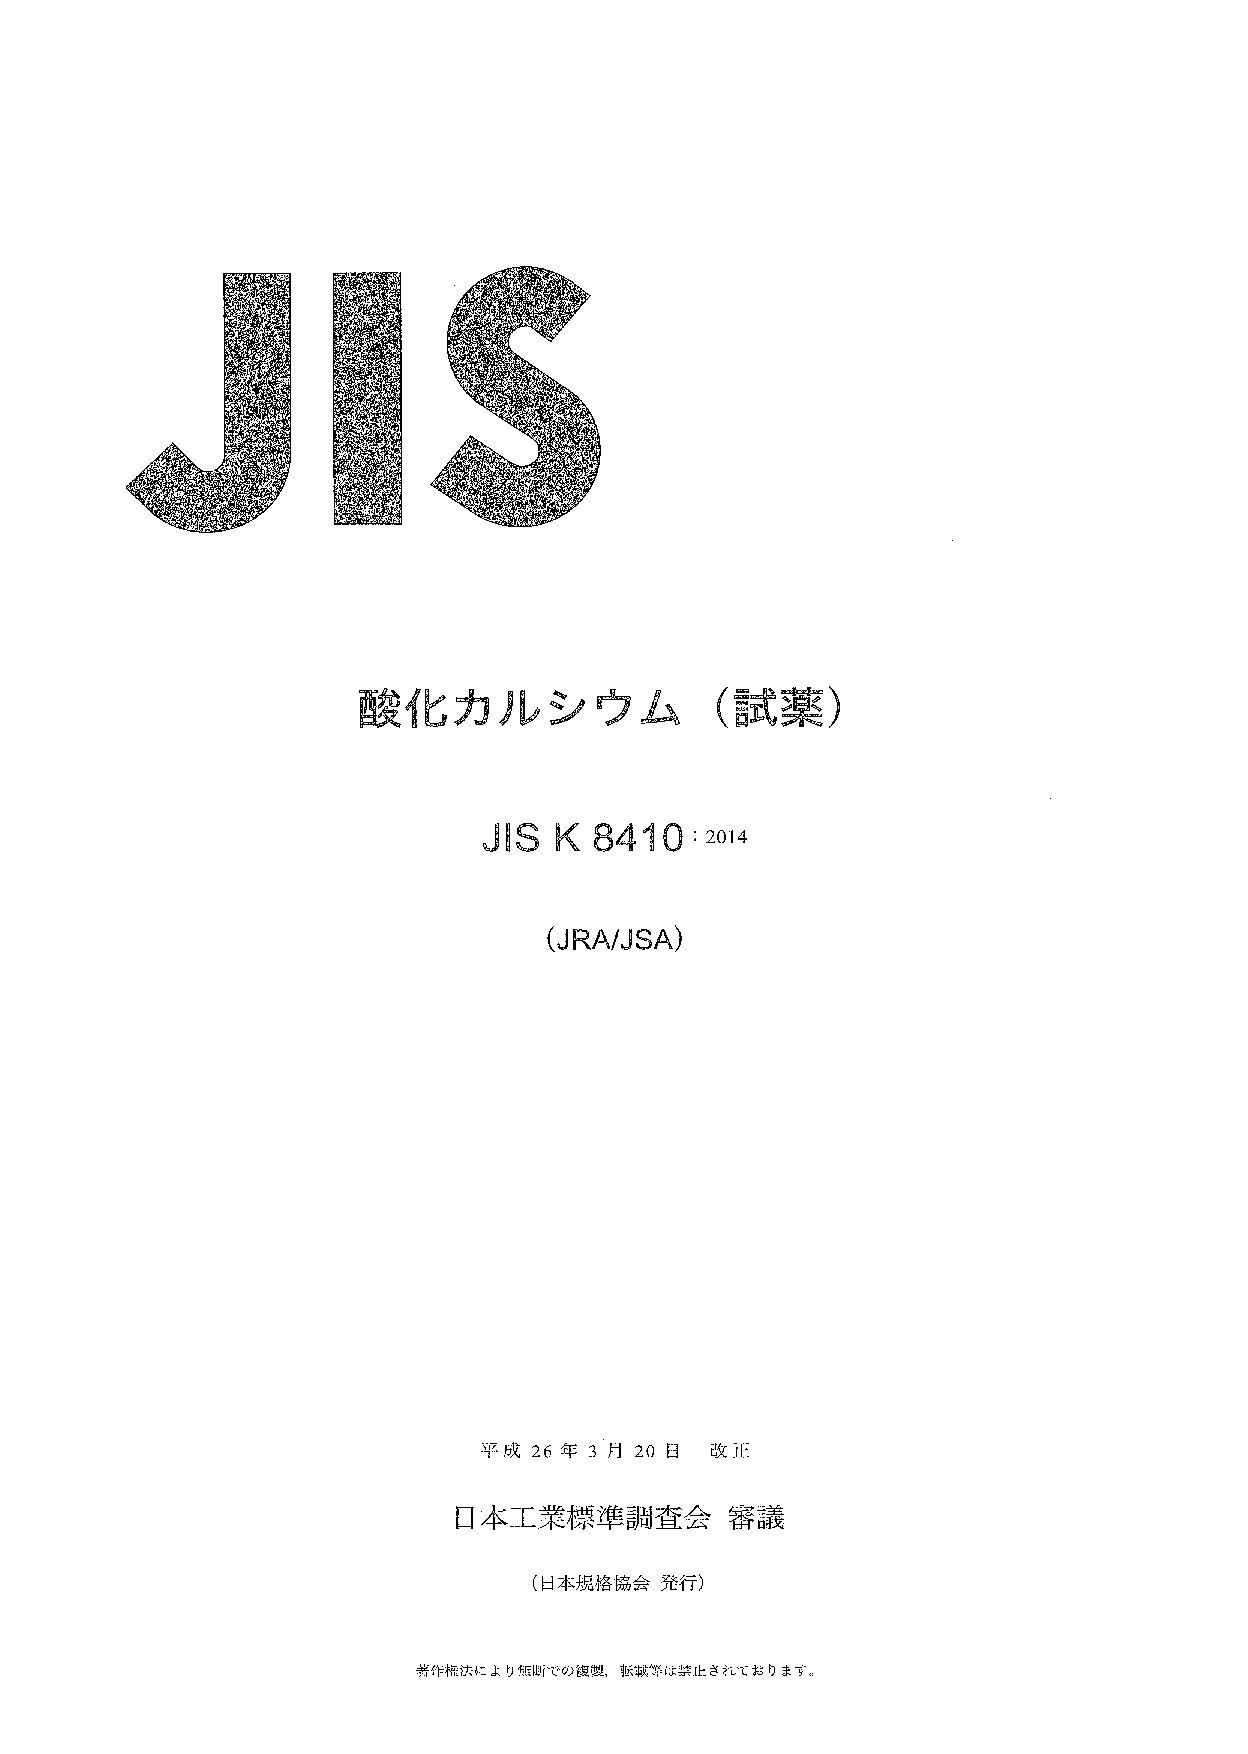 JIS K 8410:2014封面图